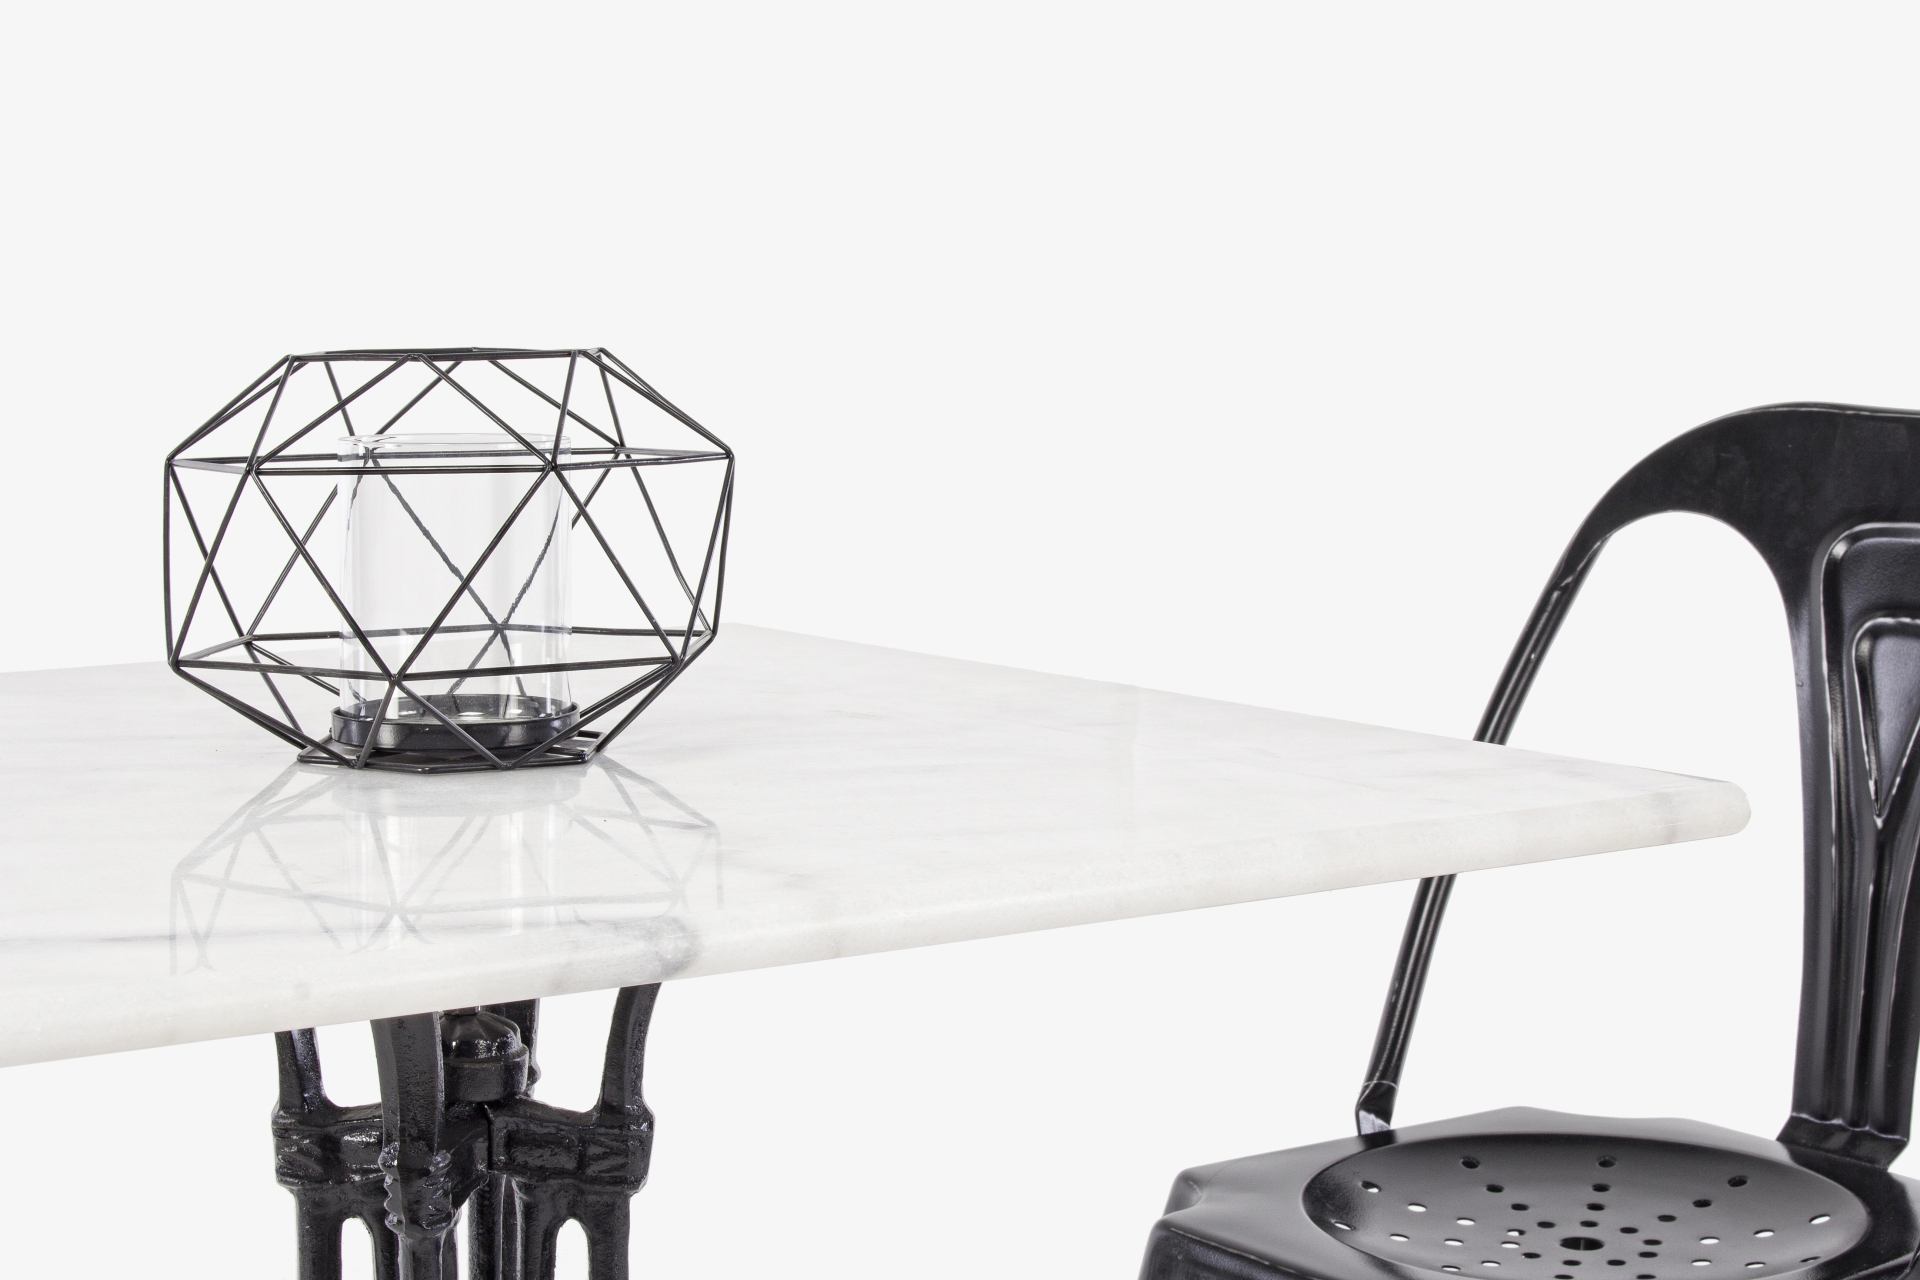 Der Esstisch Loren überzeugt mit seinem klassischem Design. Gefertigt wurde er aus Marmor, welches einen weißen Farbton besitzt. Das Gestell des Tisches ist aus Metall und besitzt eine schwarze Farbe. Der Tisch hat eine Breite von 70 cm.